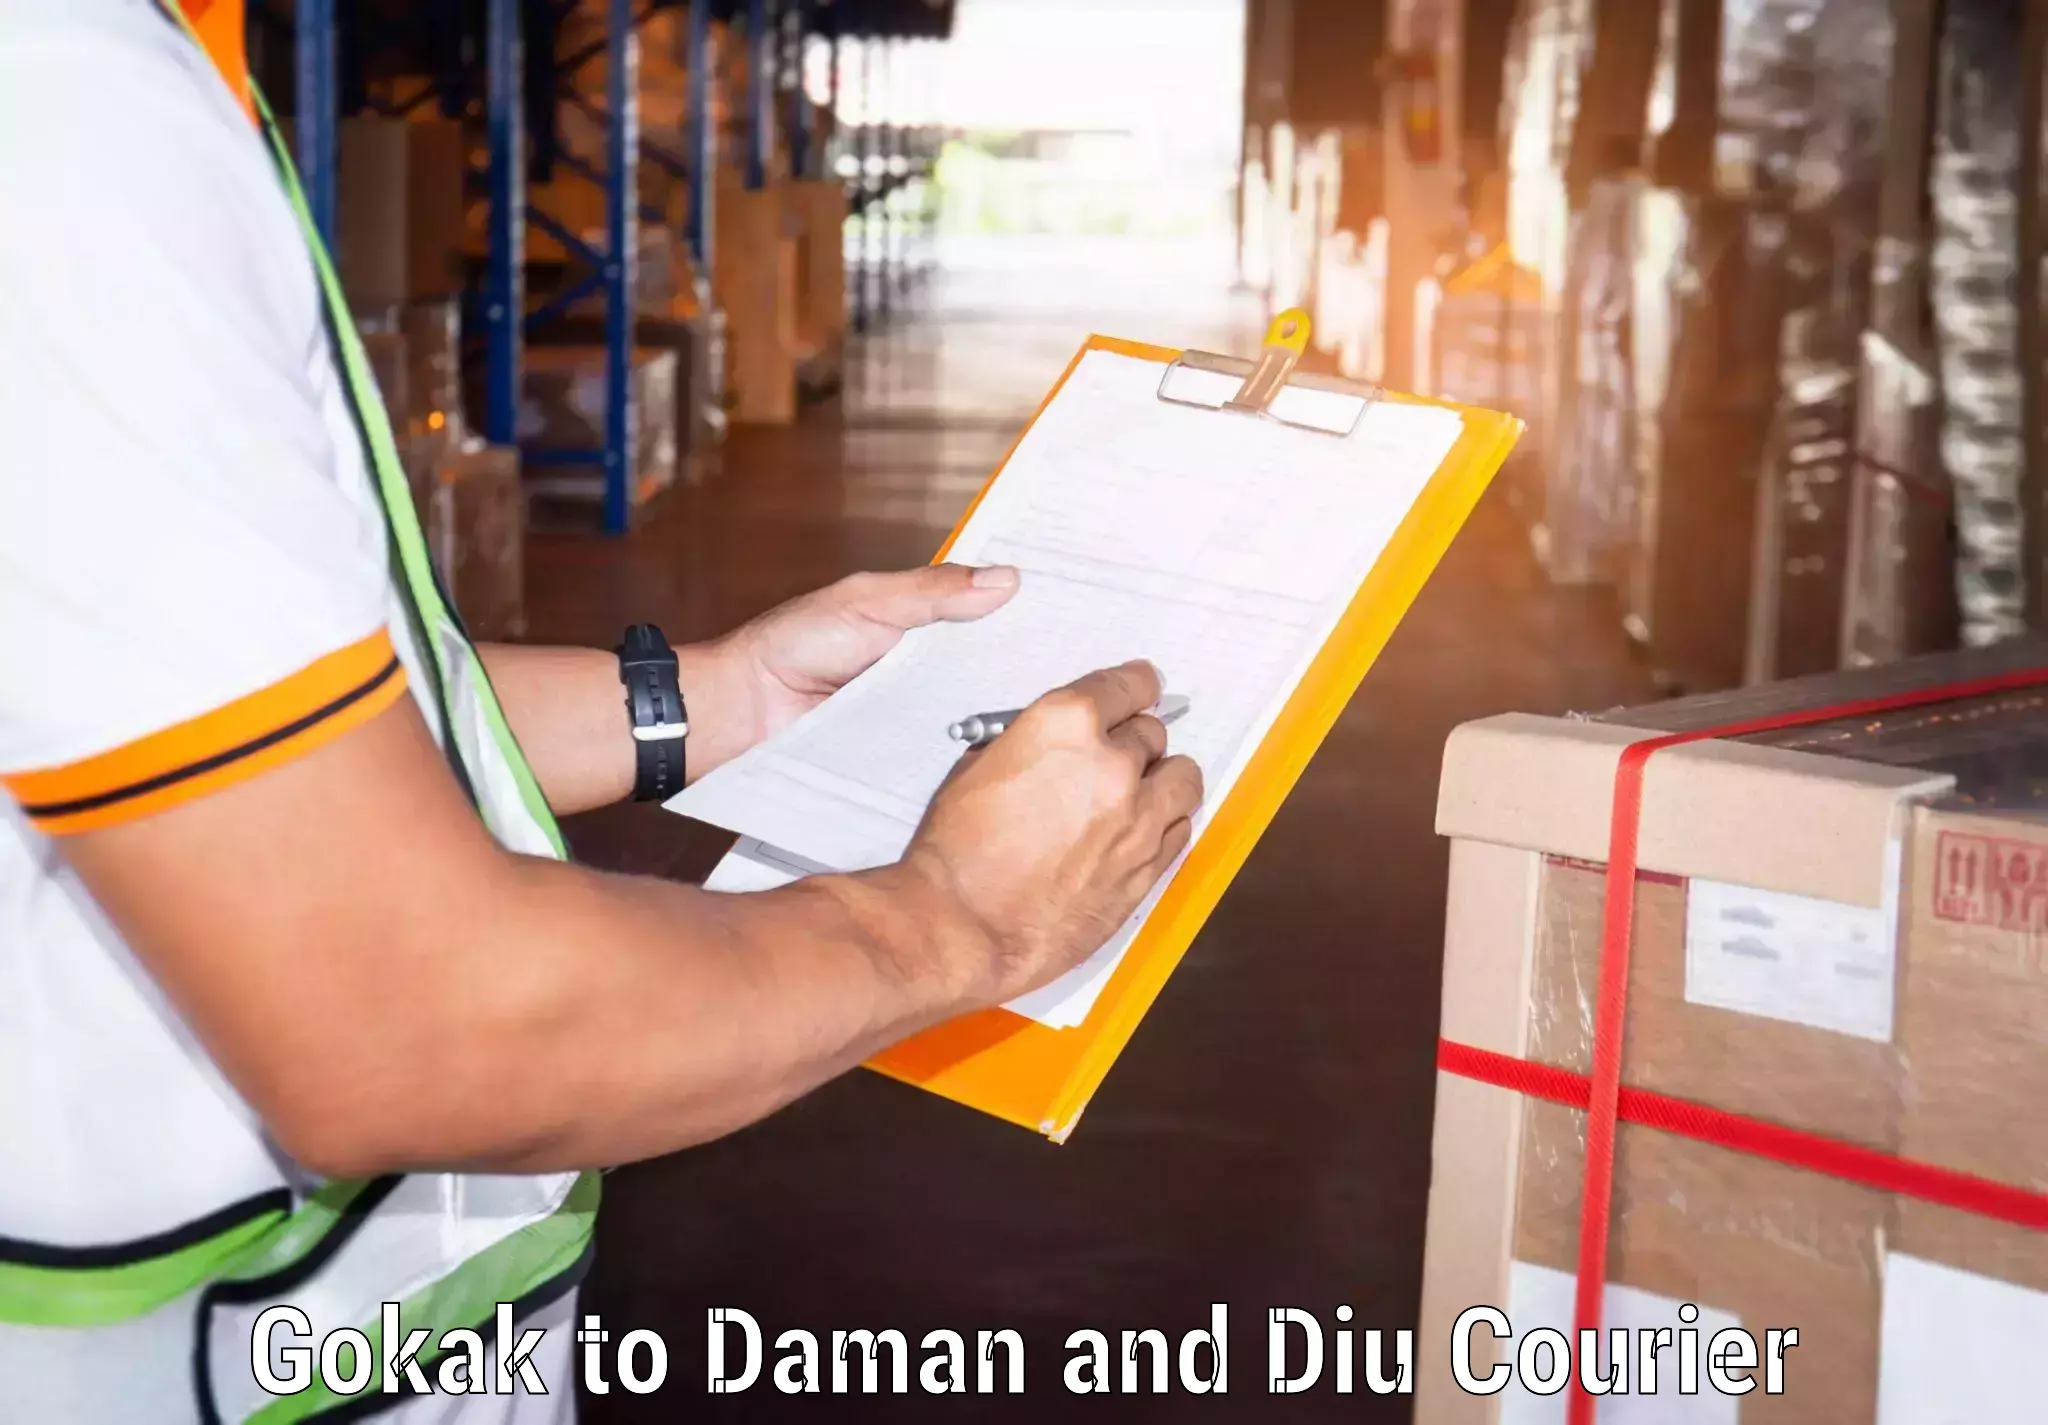 Express logistics providers Gokak to Daman and Diu